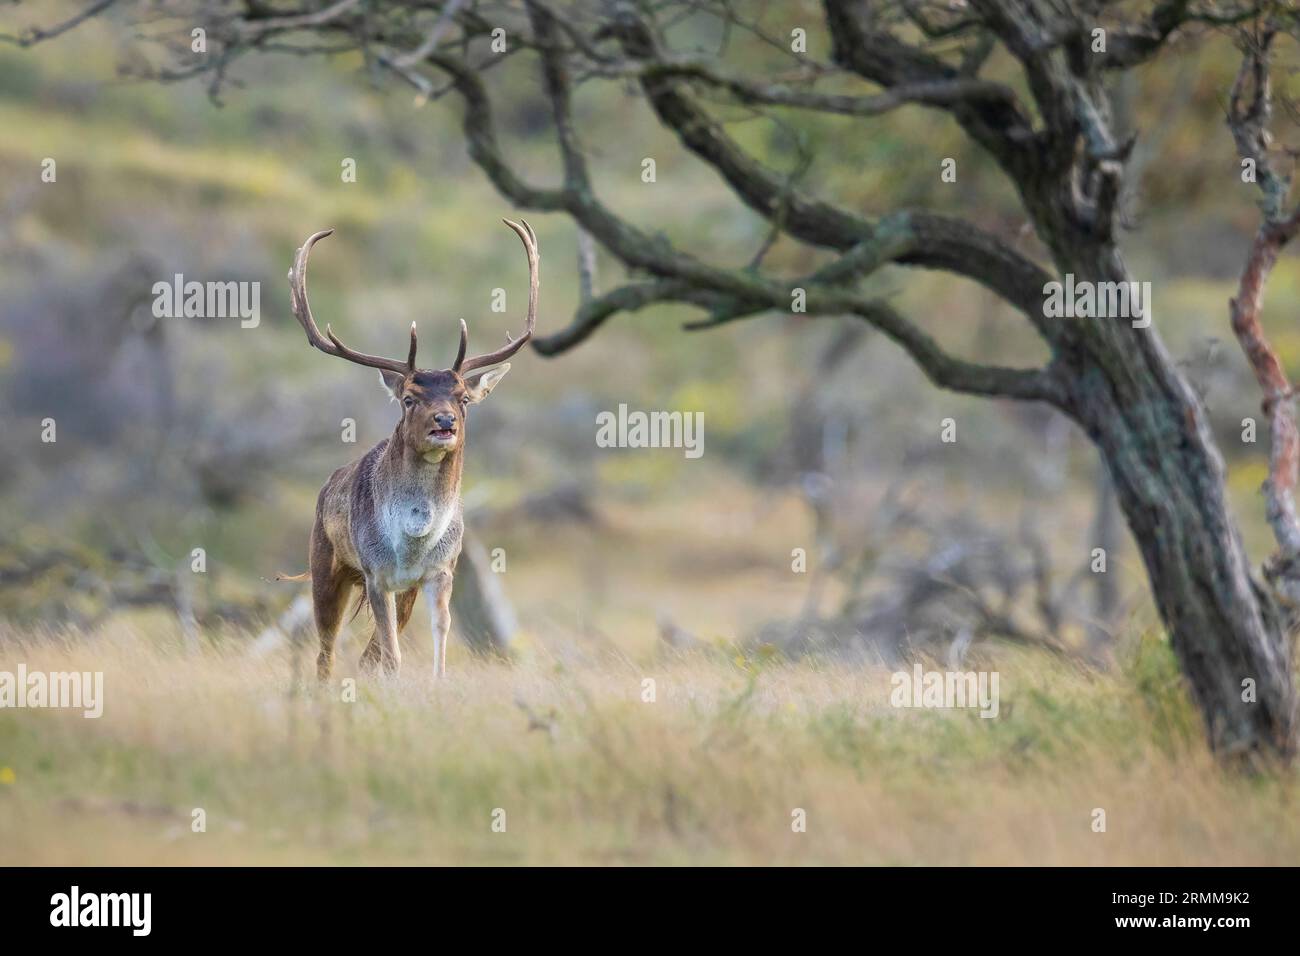 Cerf en jachère Dama Dama stag mâle avec de gros bois pendant la saison de rutting.La lumière du soleil d'automne et les couleurs de la nature sont clairement visibles sur l'arrière-plan. Banque D'Images